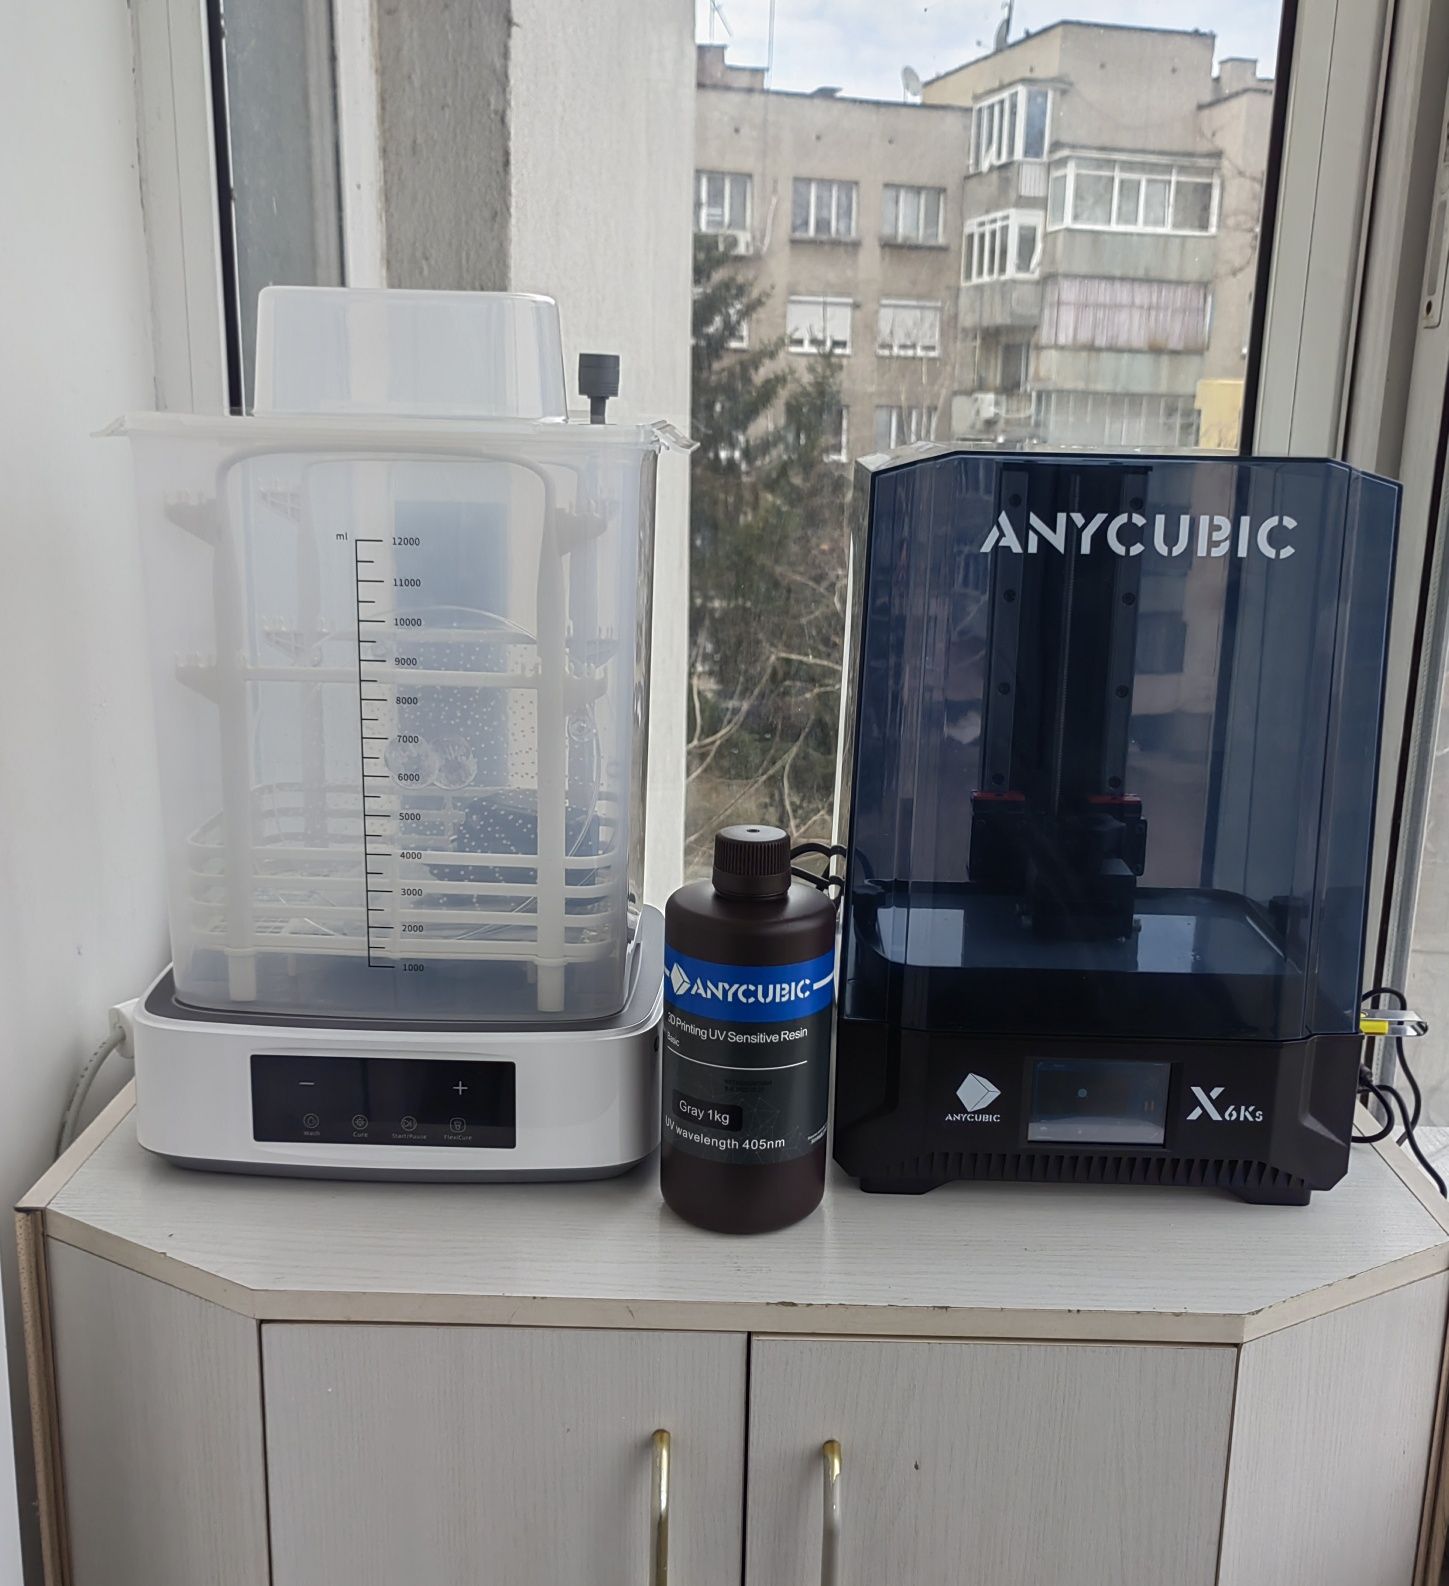 3D принтер Anycubic + Washer + purifure